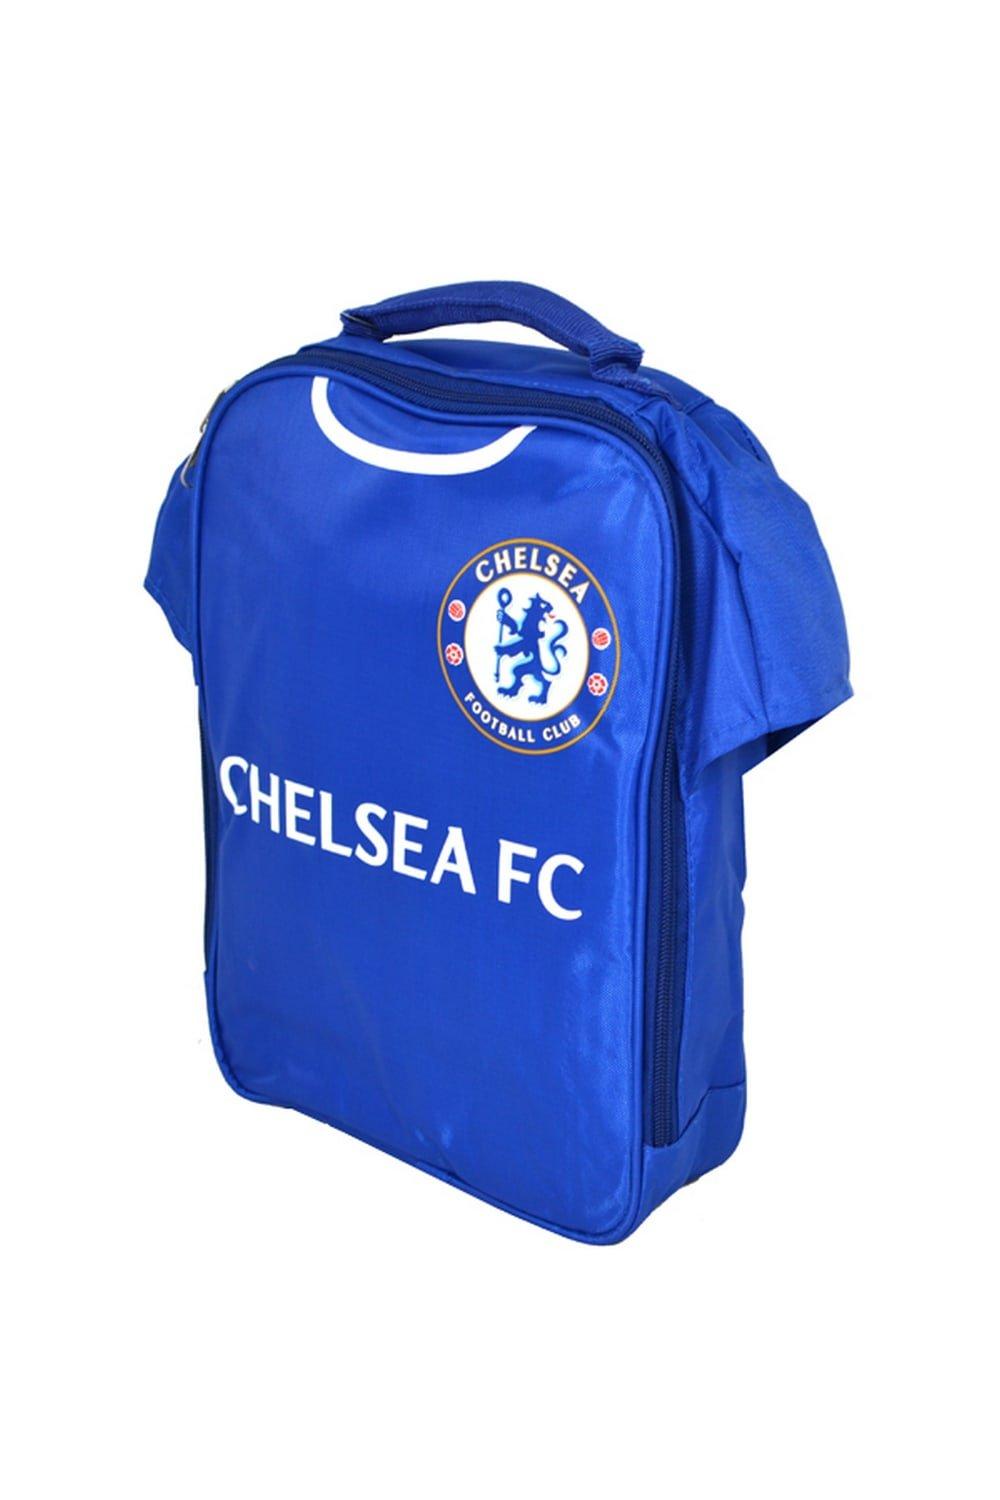 Официальный комплект для обеда Chelsea FC, синий